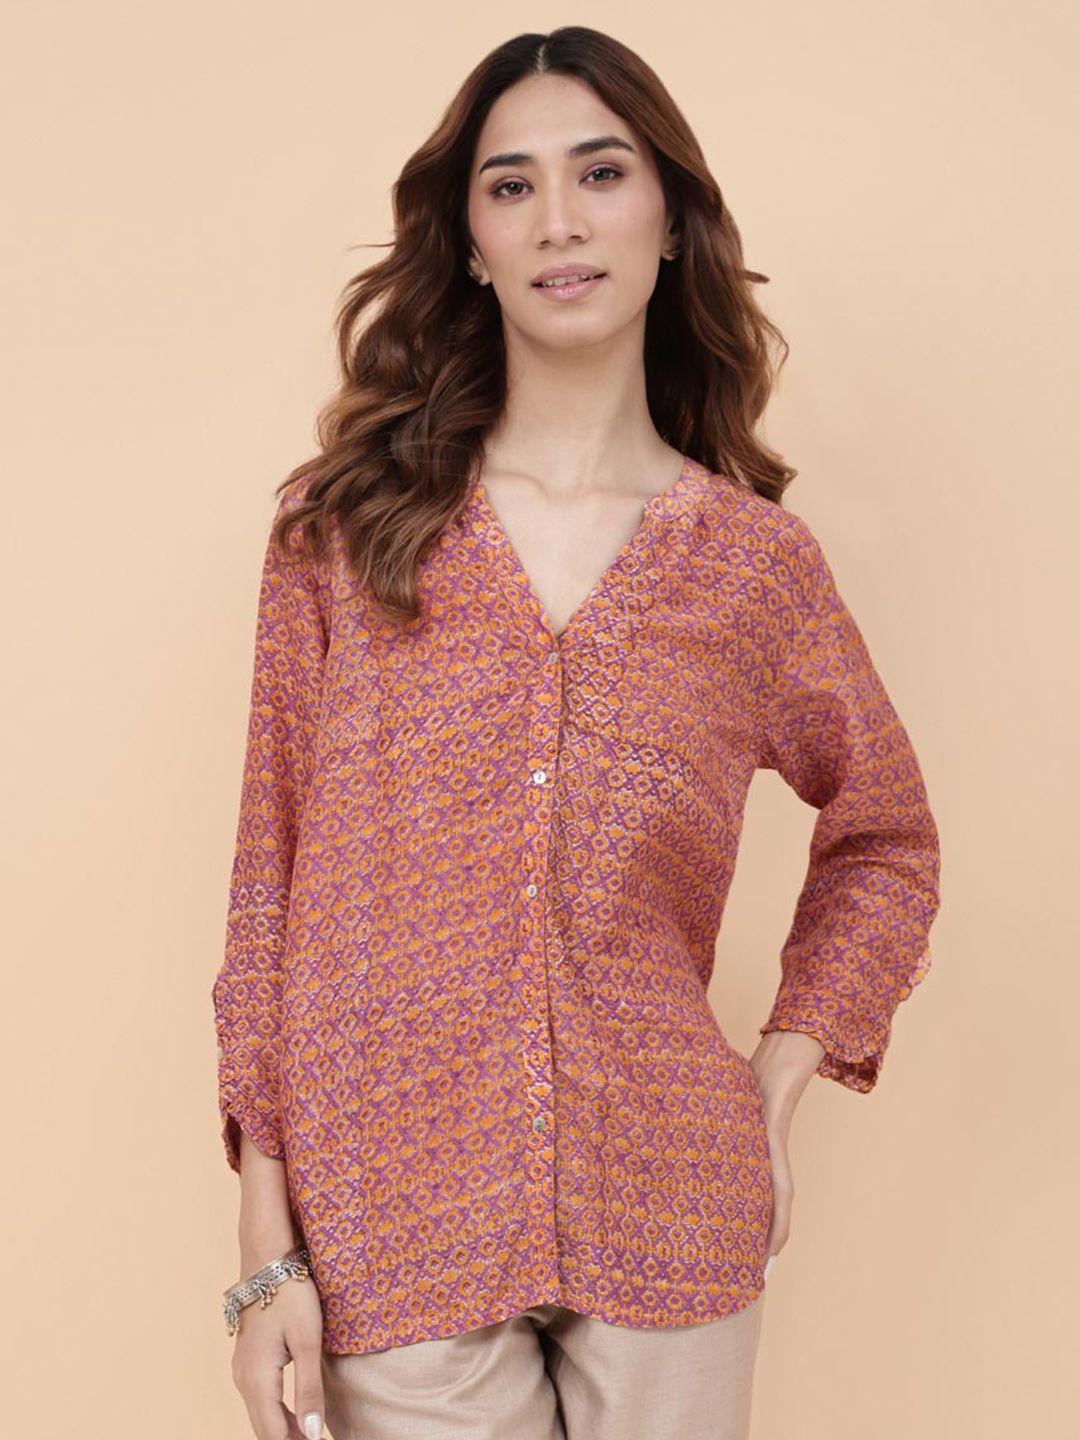 fabindia ethnic motifs printed casual shirt